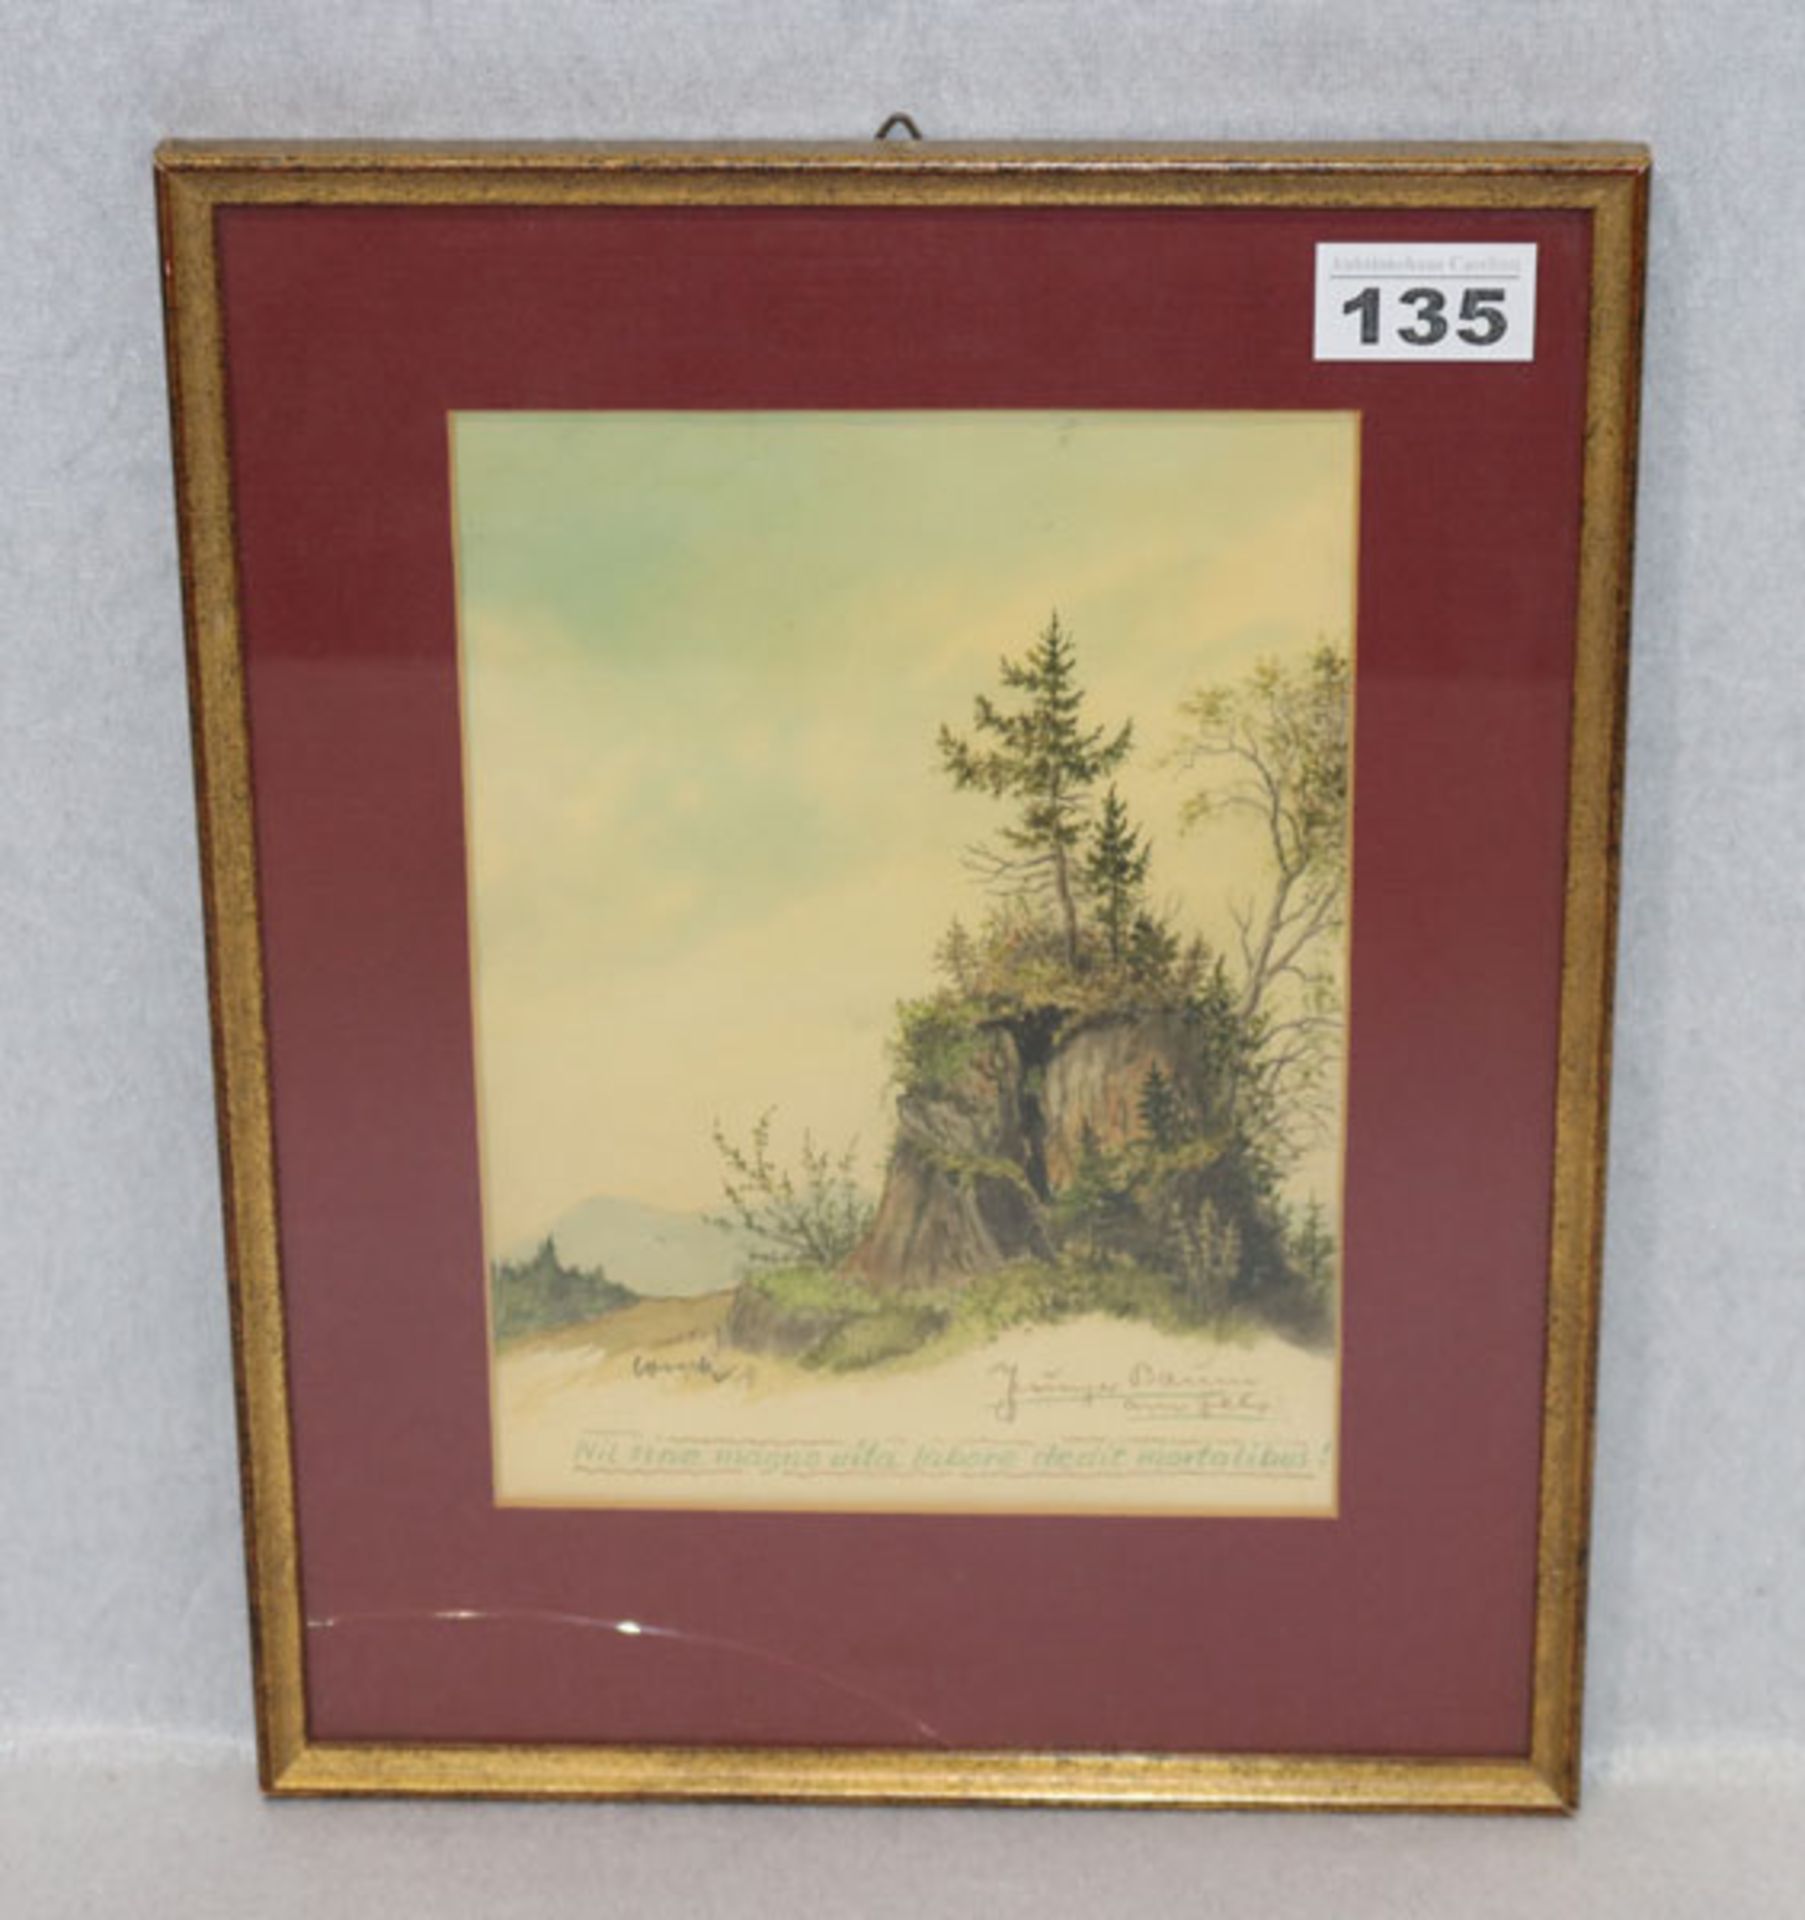 Aquarell 'Junger Baum am Fels', signiert Loreck, Carl Ludwig Loreck, datiert 89, * 14.11.1898